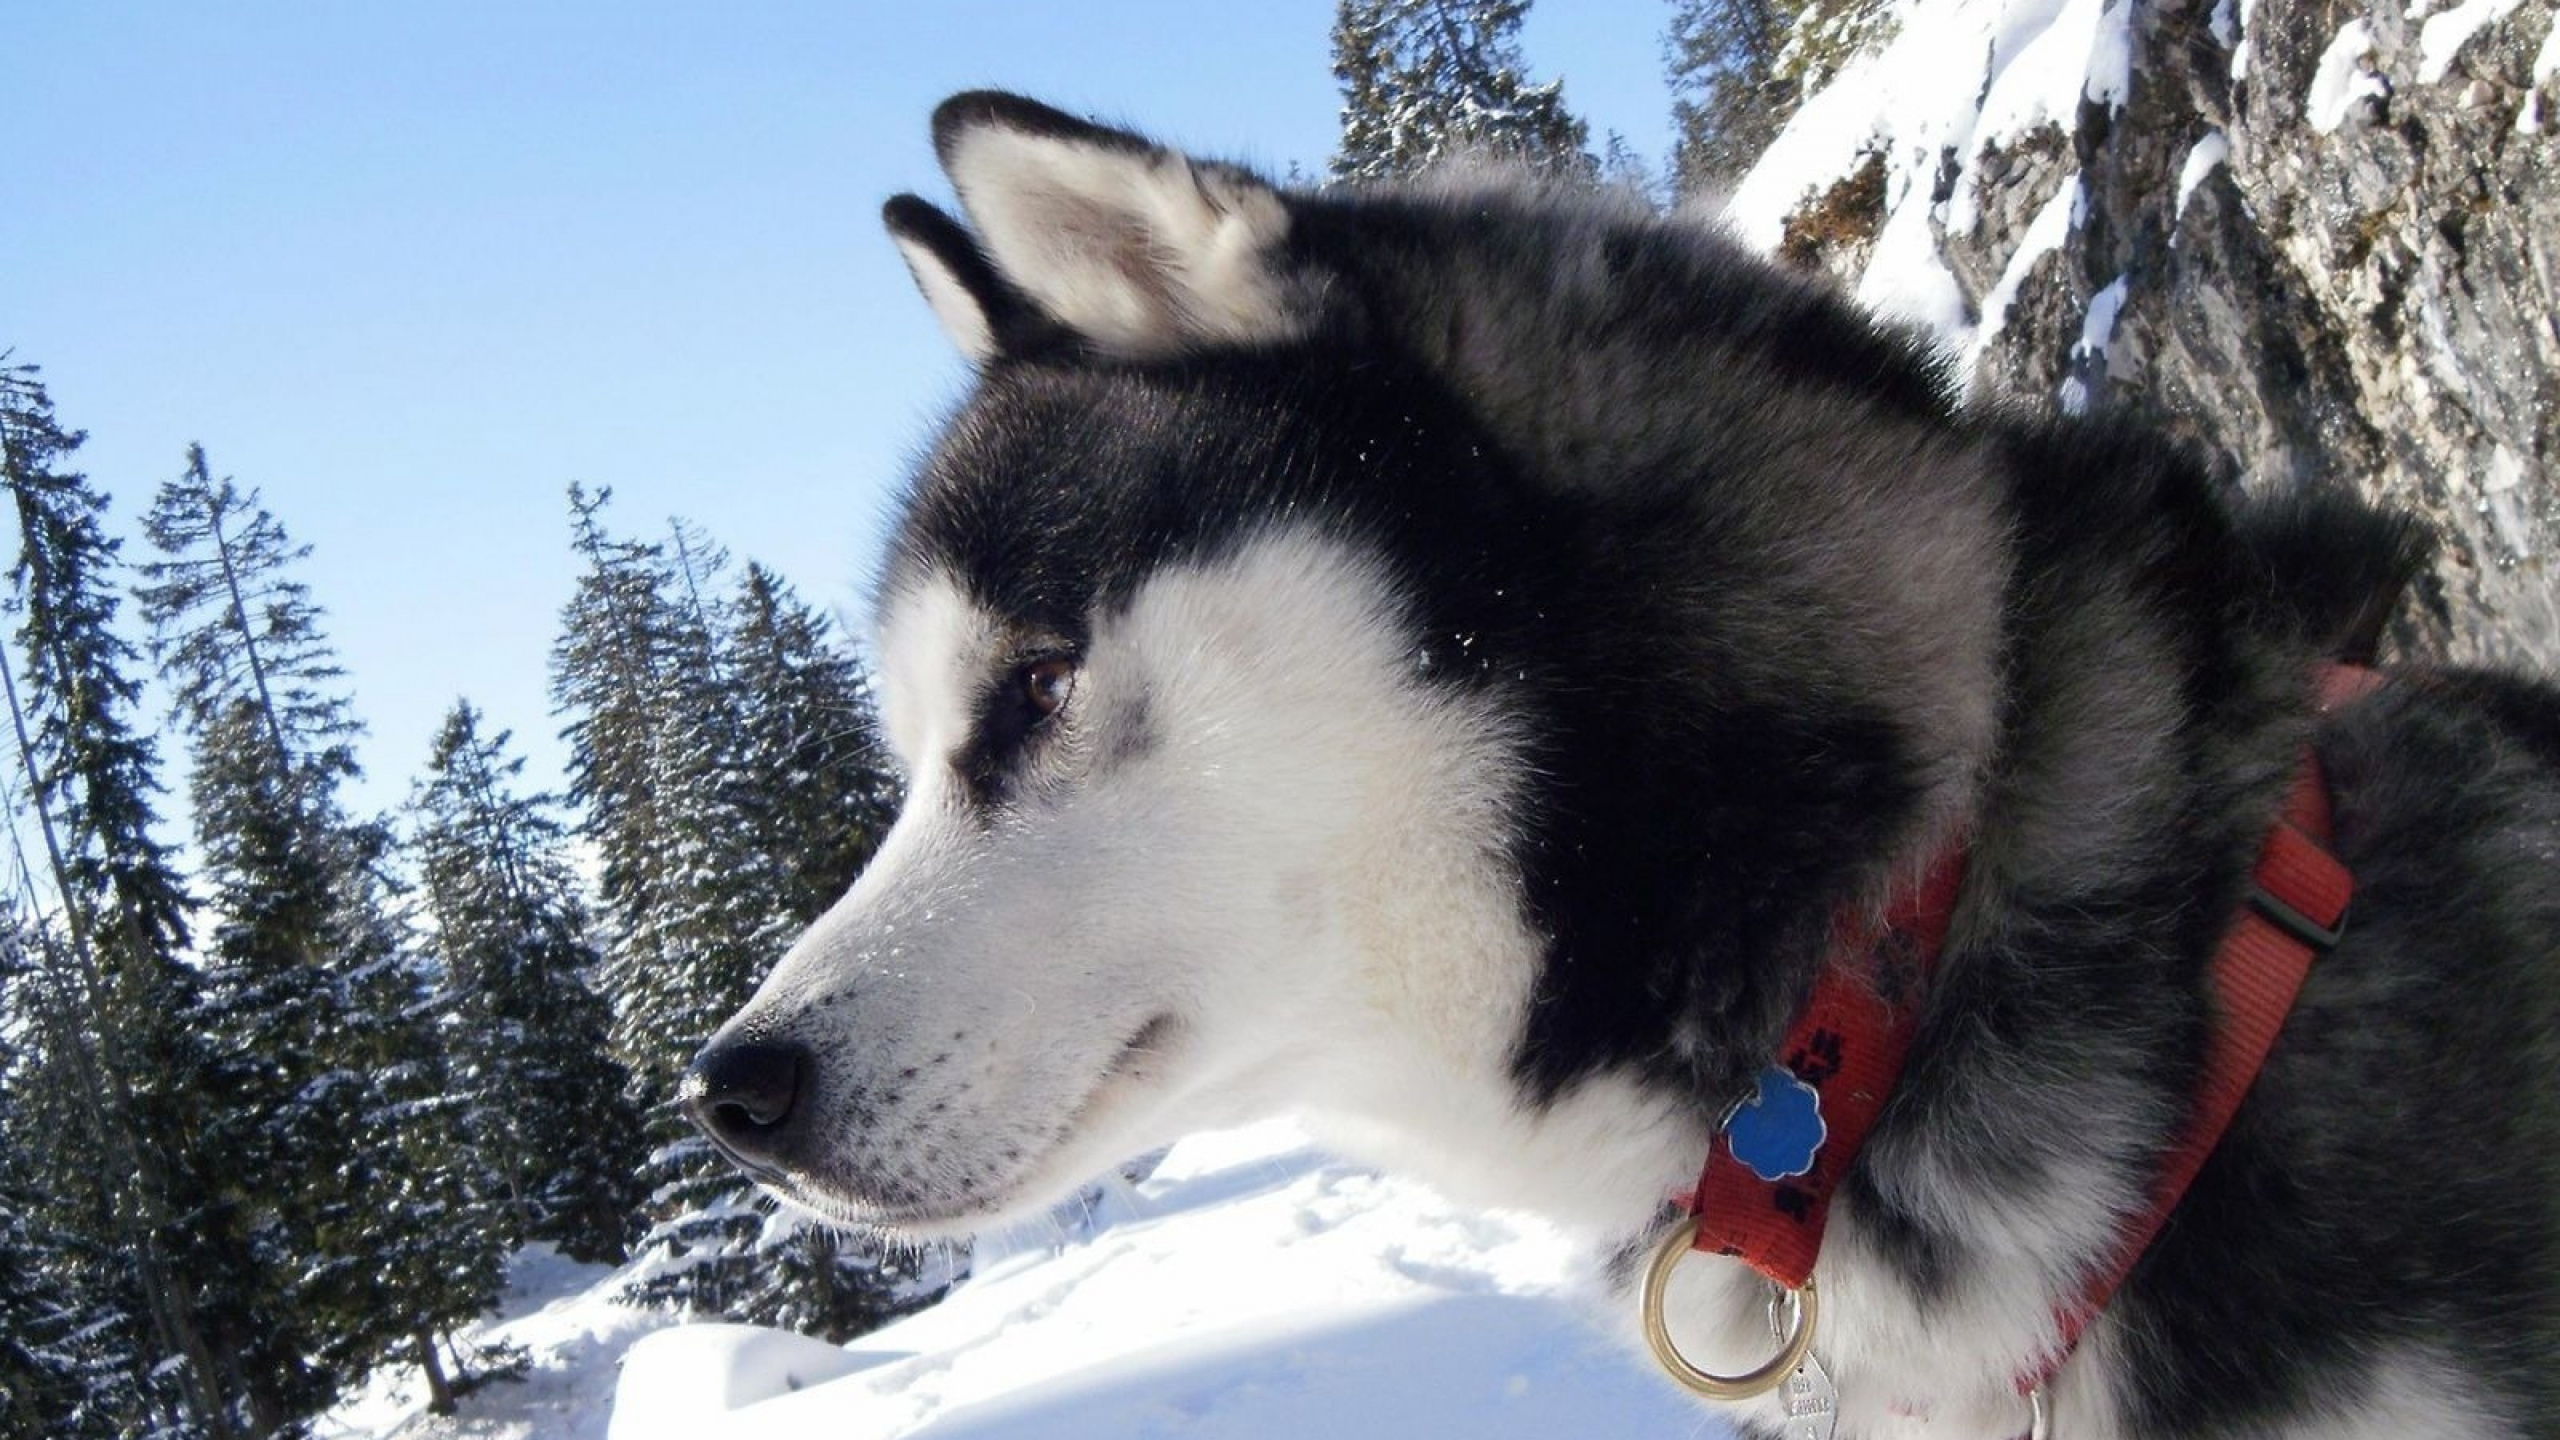 阿拉斯加雪橇犬, 赫斯基, 萨哈林赫斯基, 雪橇狗, 哈士奇 壁纸 2560x1440 允许